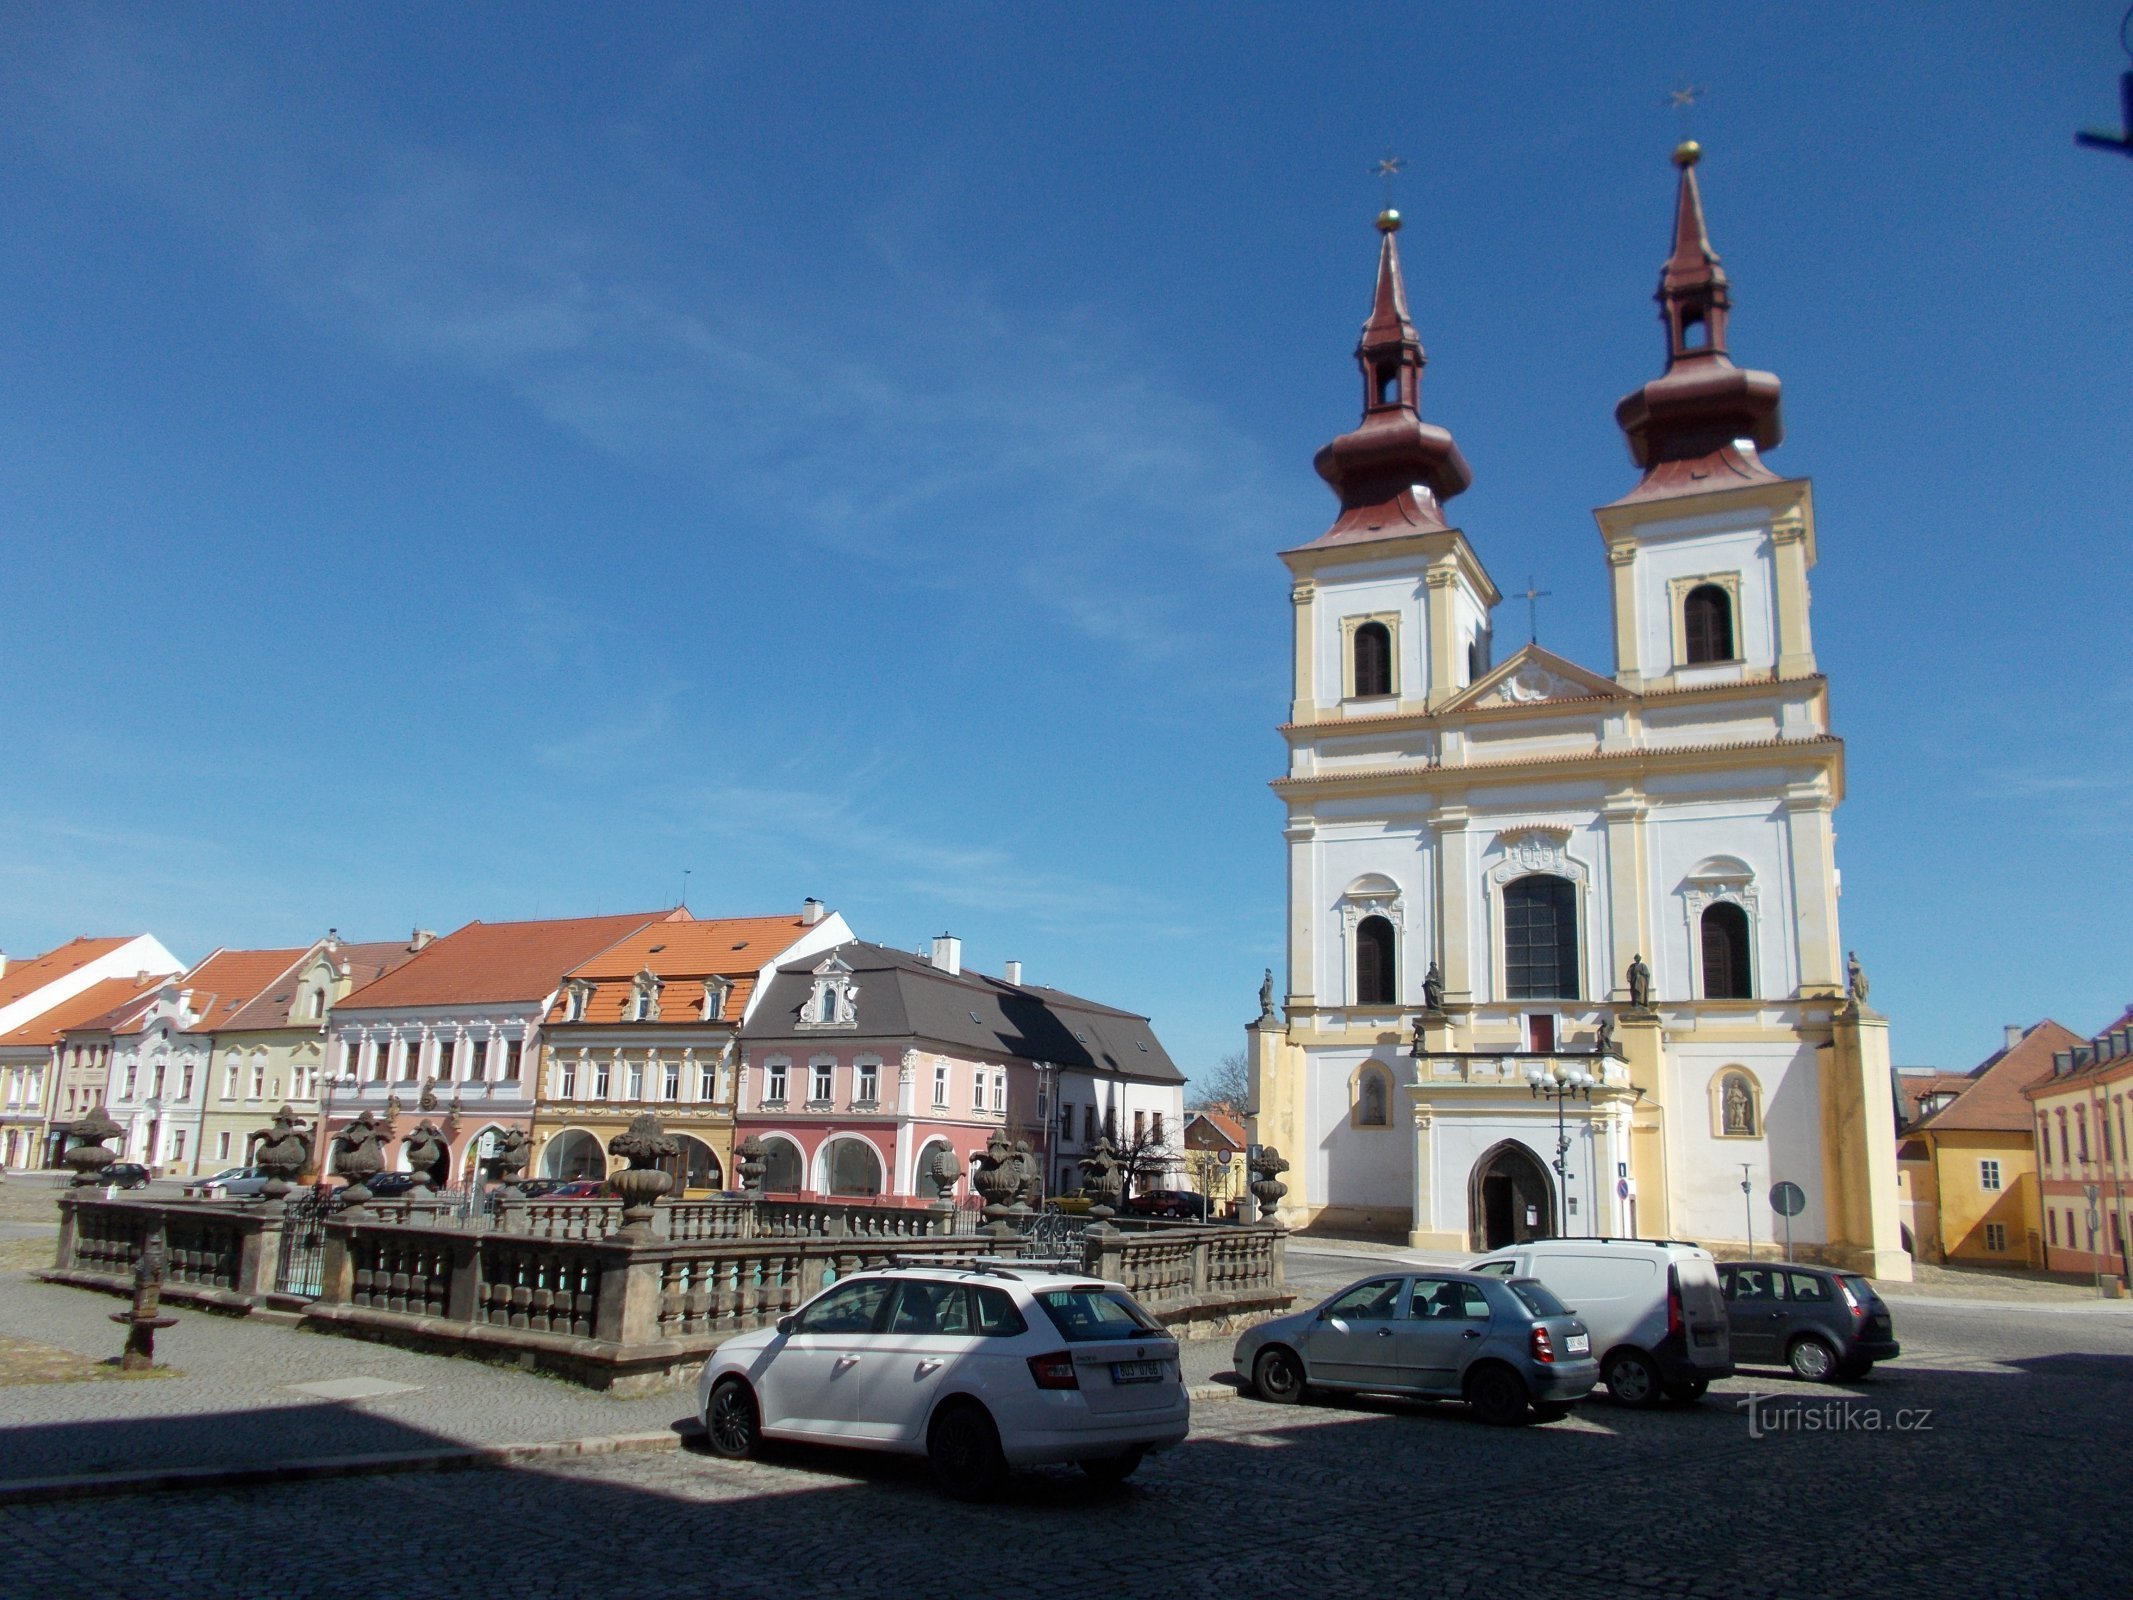 Šlikovský-vijver voor de kerk van de Hemelvaart van St. Crisis